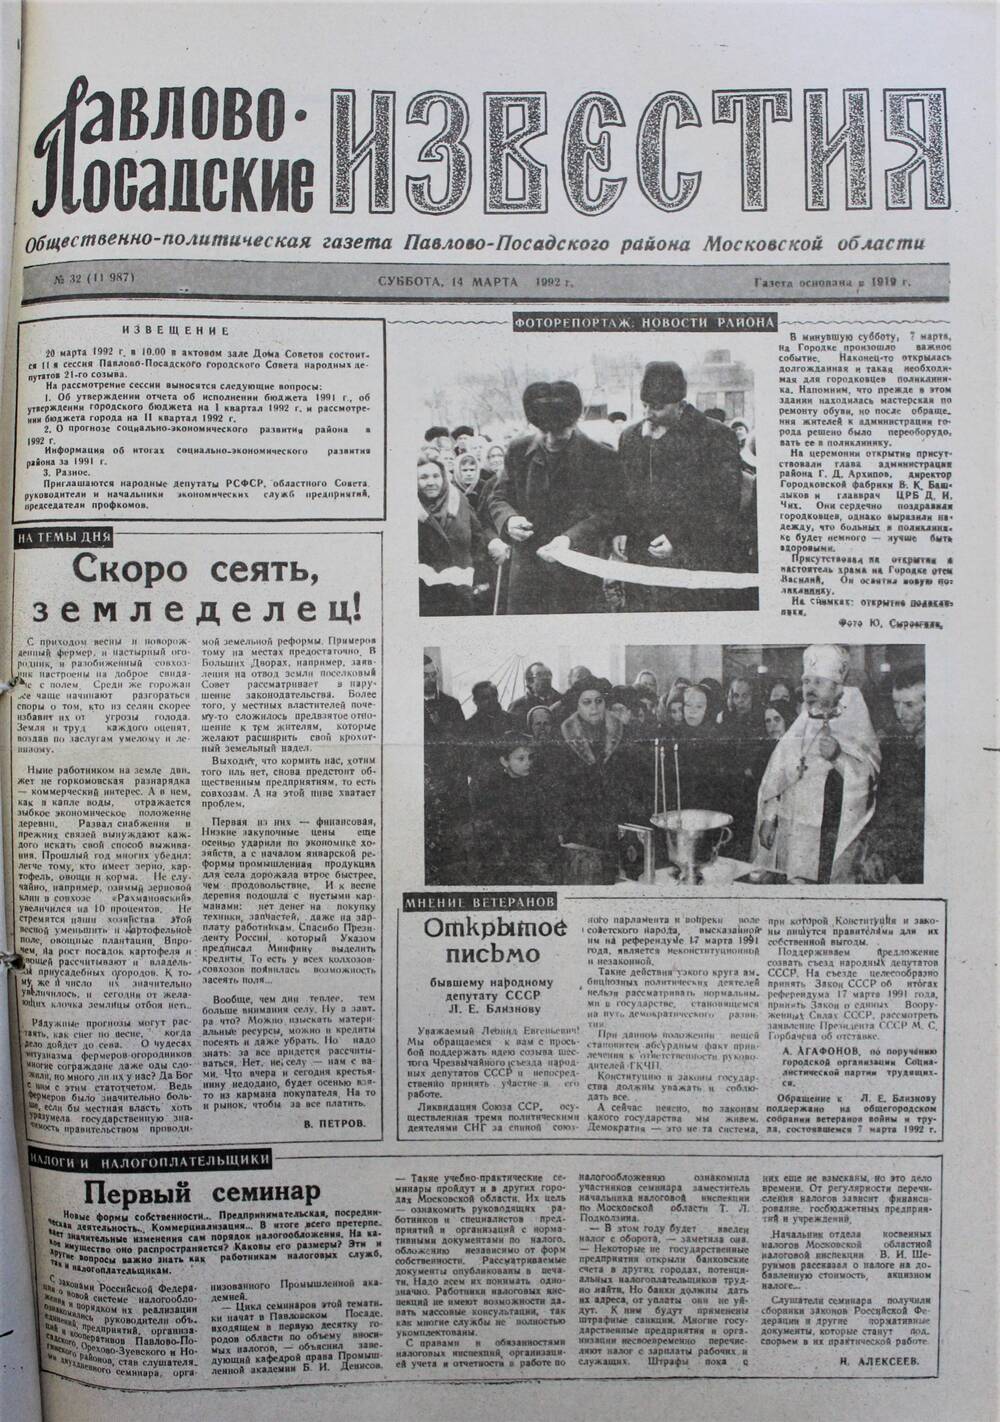 Газета Павлово-Посадские известия № 32 (11987)  от 14 марта 1992 г.